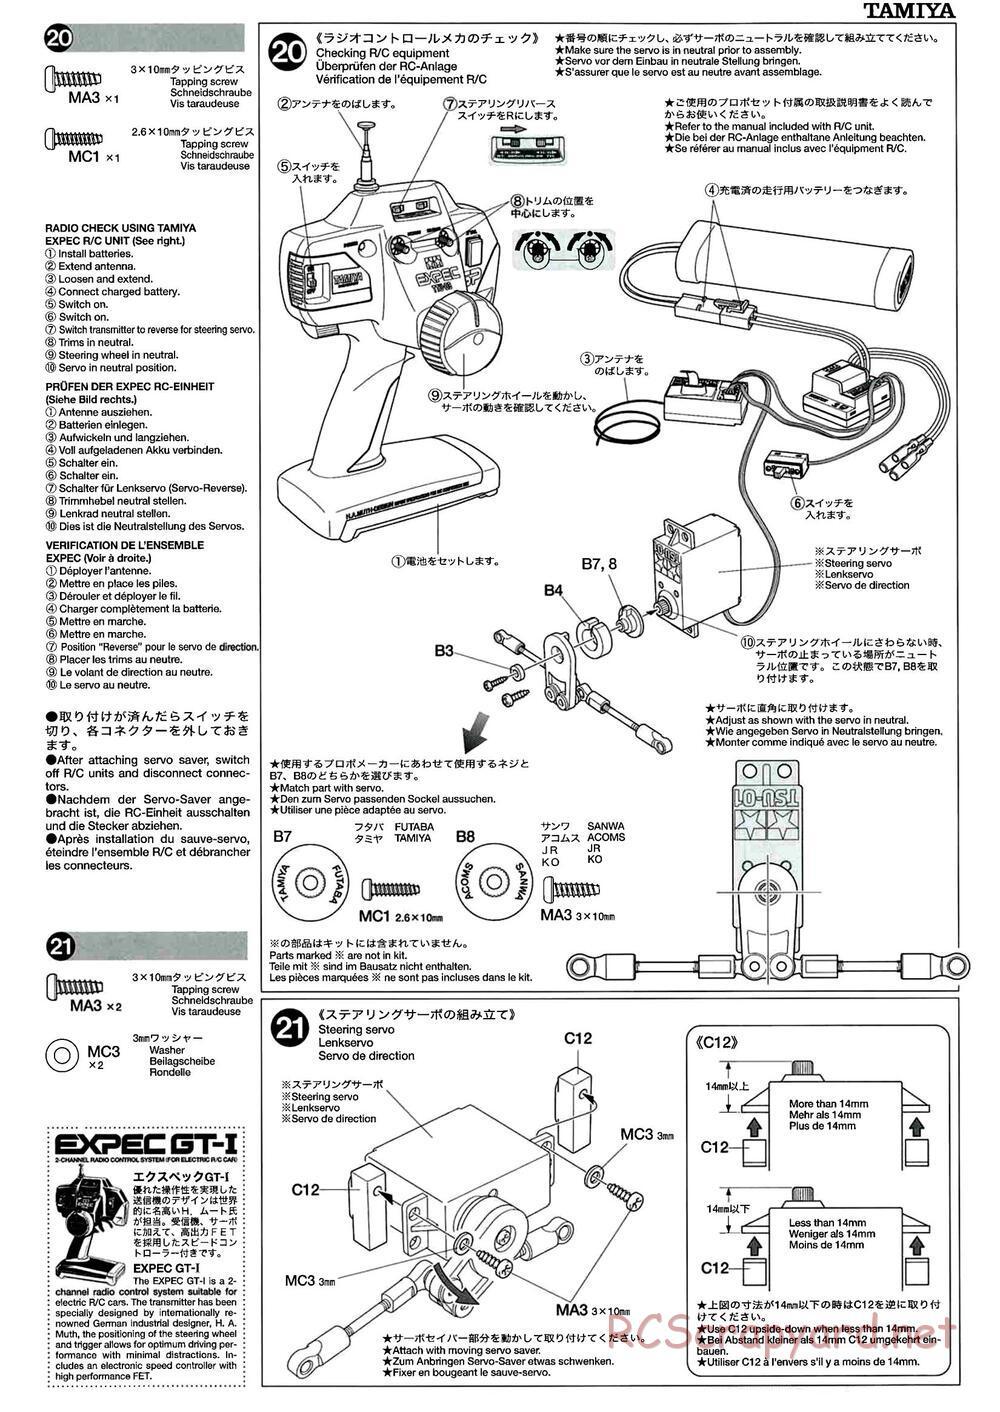 Tamiya - M-04L Chassis - Manual - Page 11